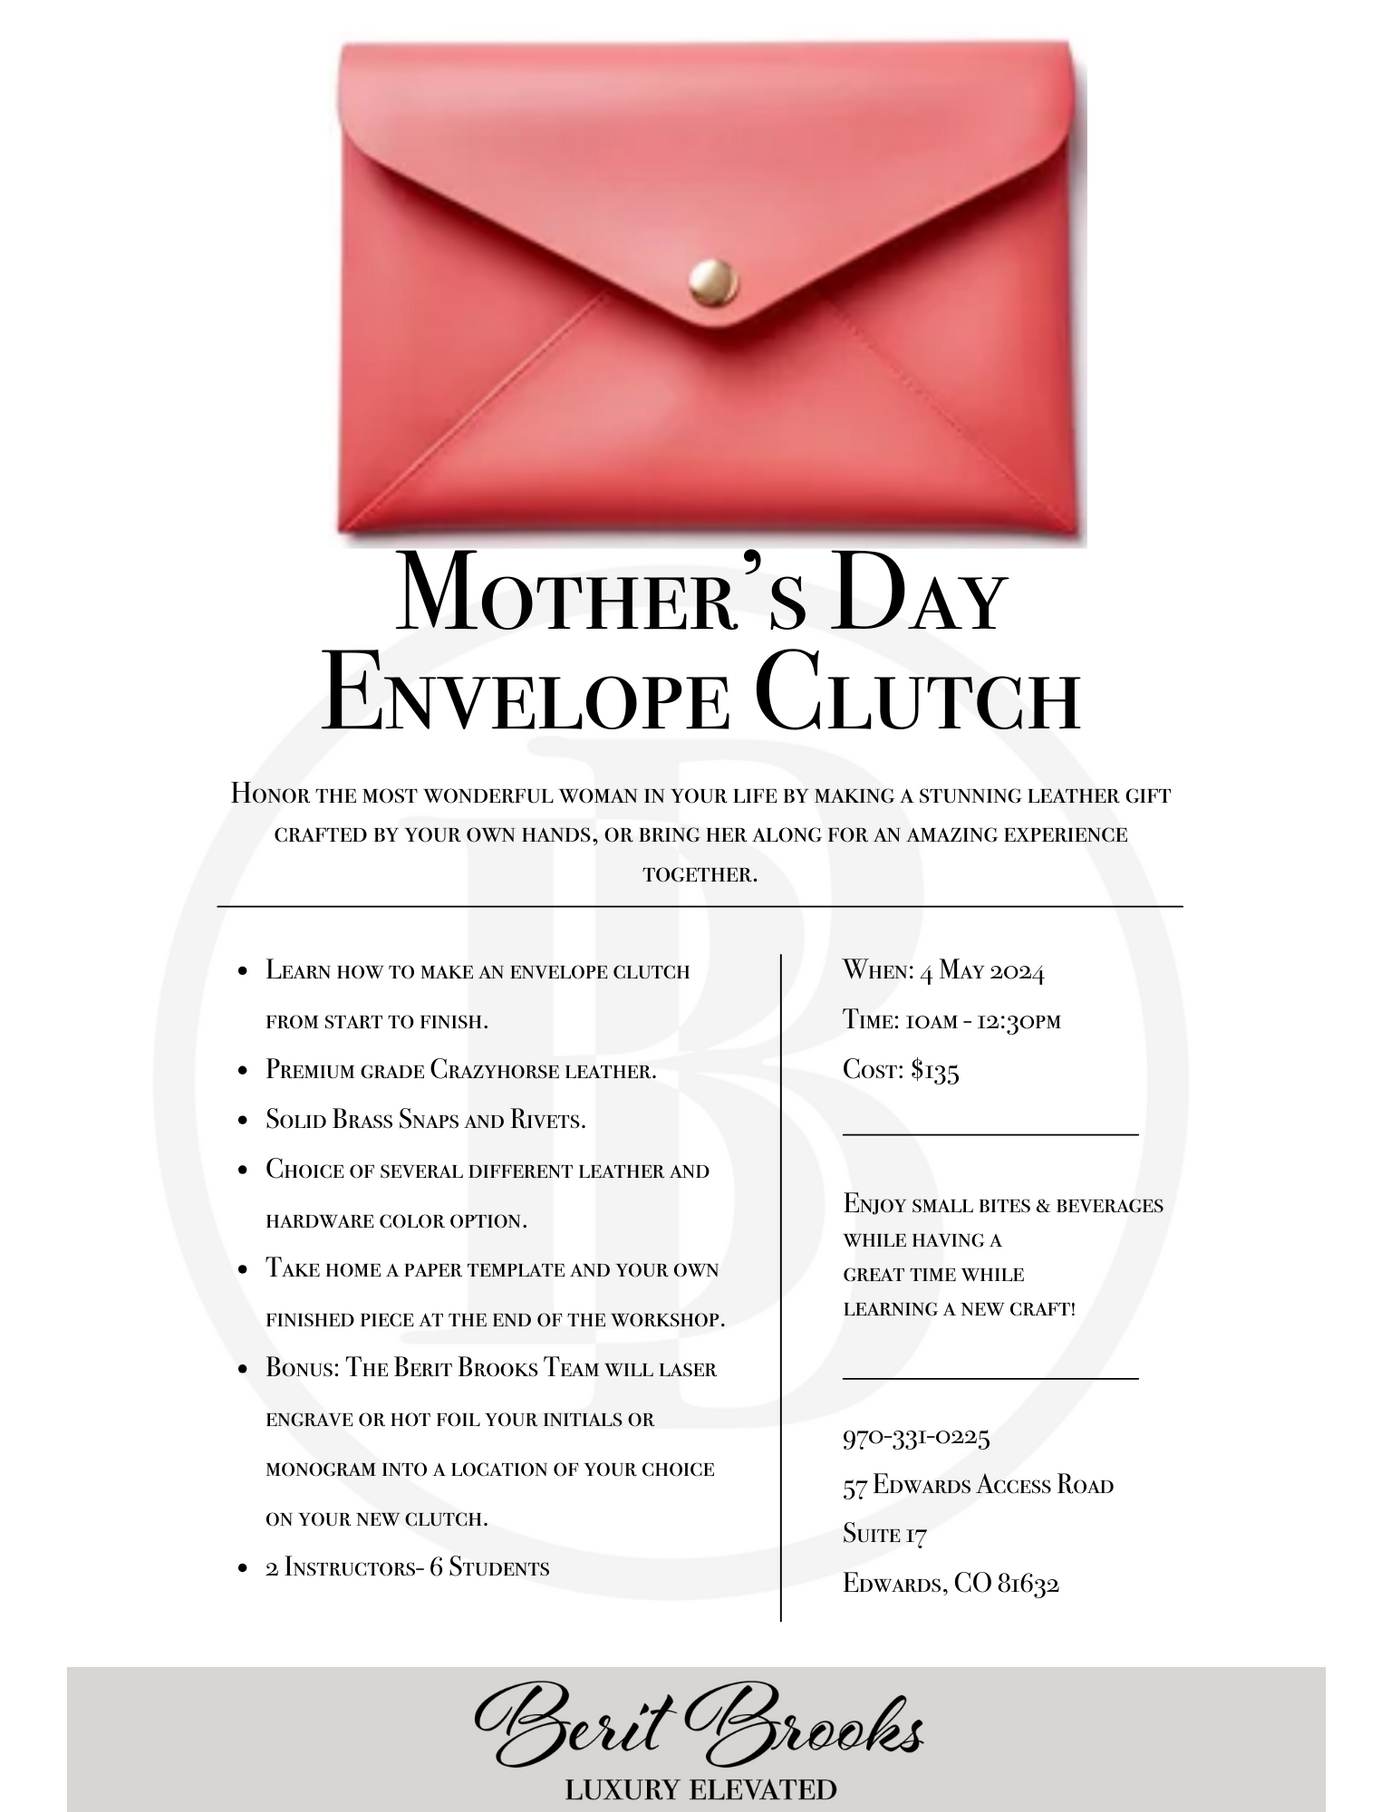 Mother's Day Envelope Clutch Workshop